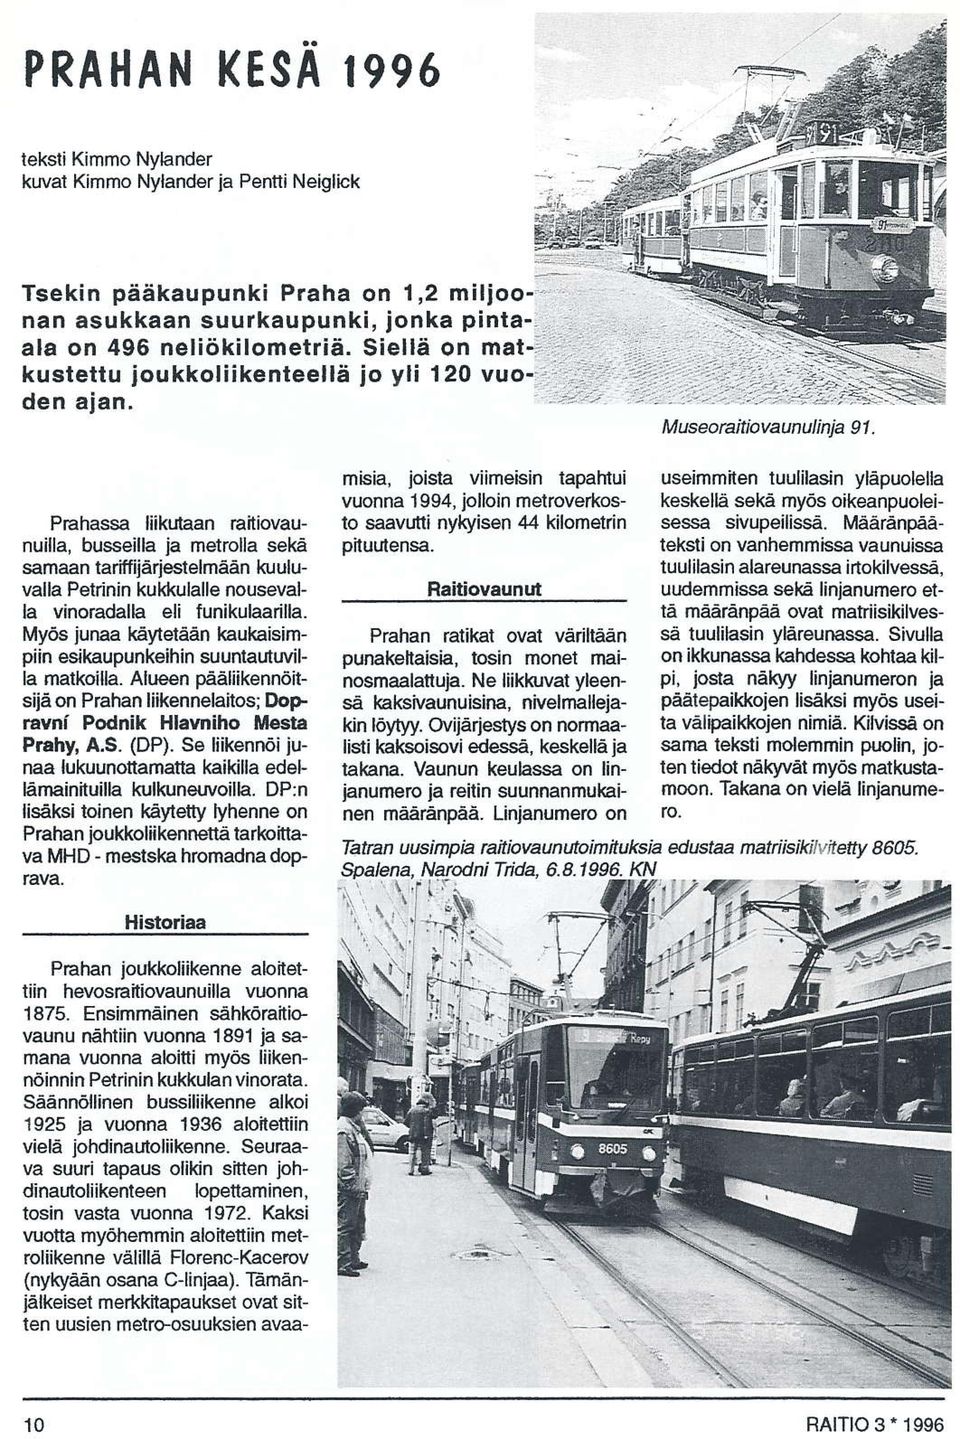 .' M u5eoraitiavaun uli nja I 1. Prahassa liikutaan raitiovaunuilla, busseilla ja netrolla sekä samaan tariffijärjestelmäån kuuluvalla Petrinin kukkulalle nousevalla vinoradalh eli funikulåarilla.